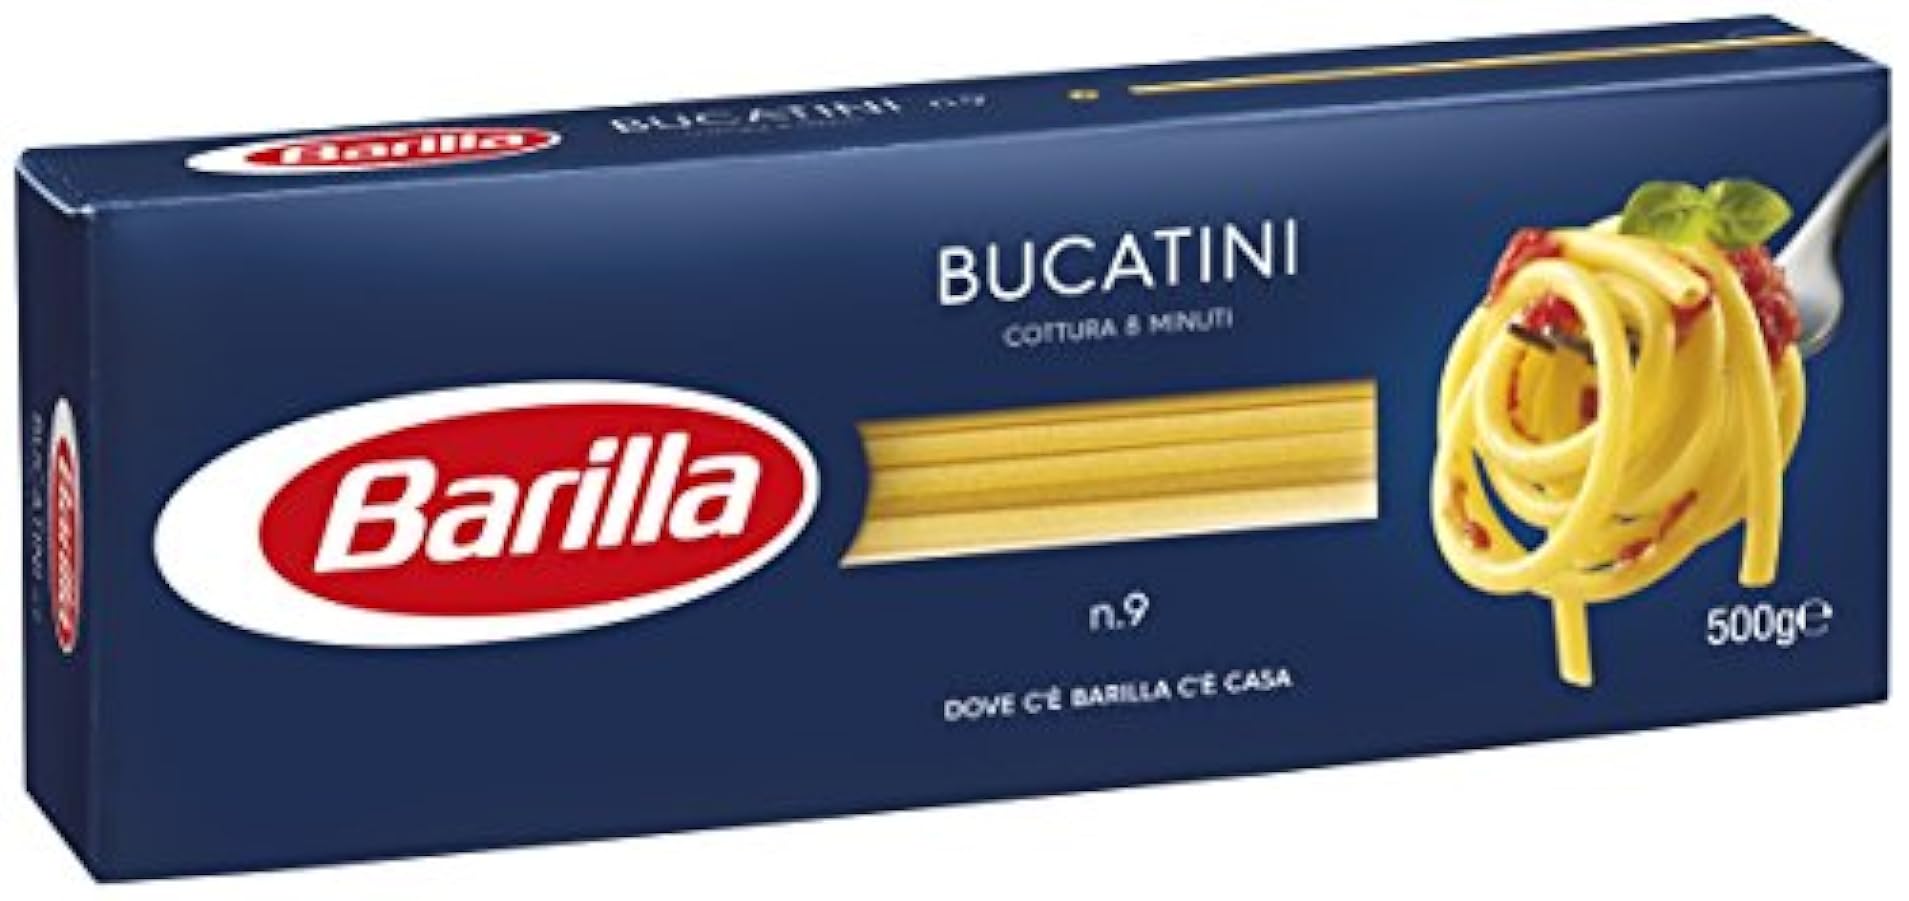 Barilla - Bucatini n.9 - 24 confezioni da 500 g [12kg] 554530492